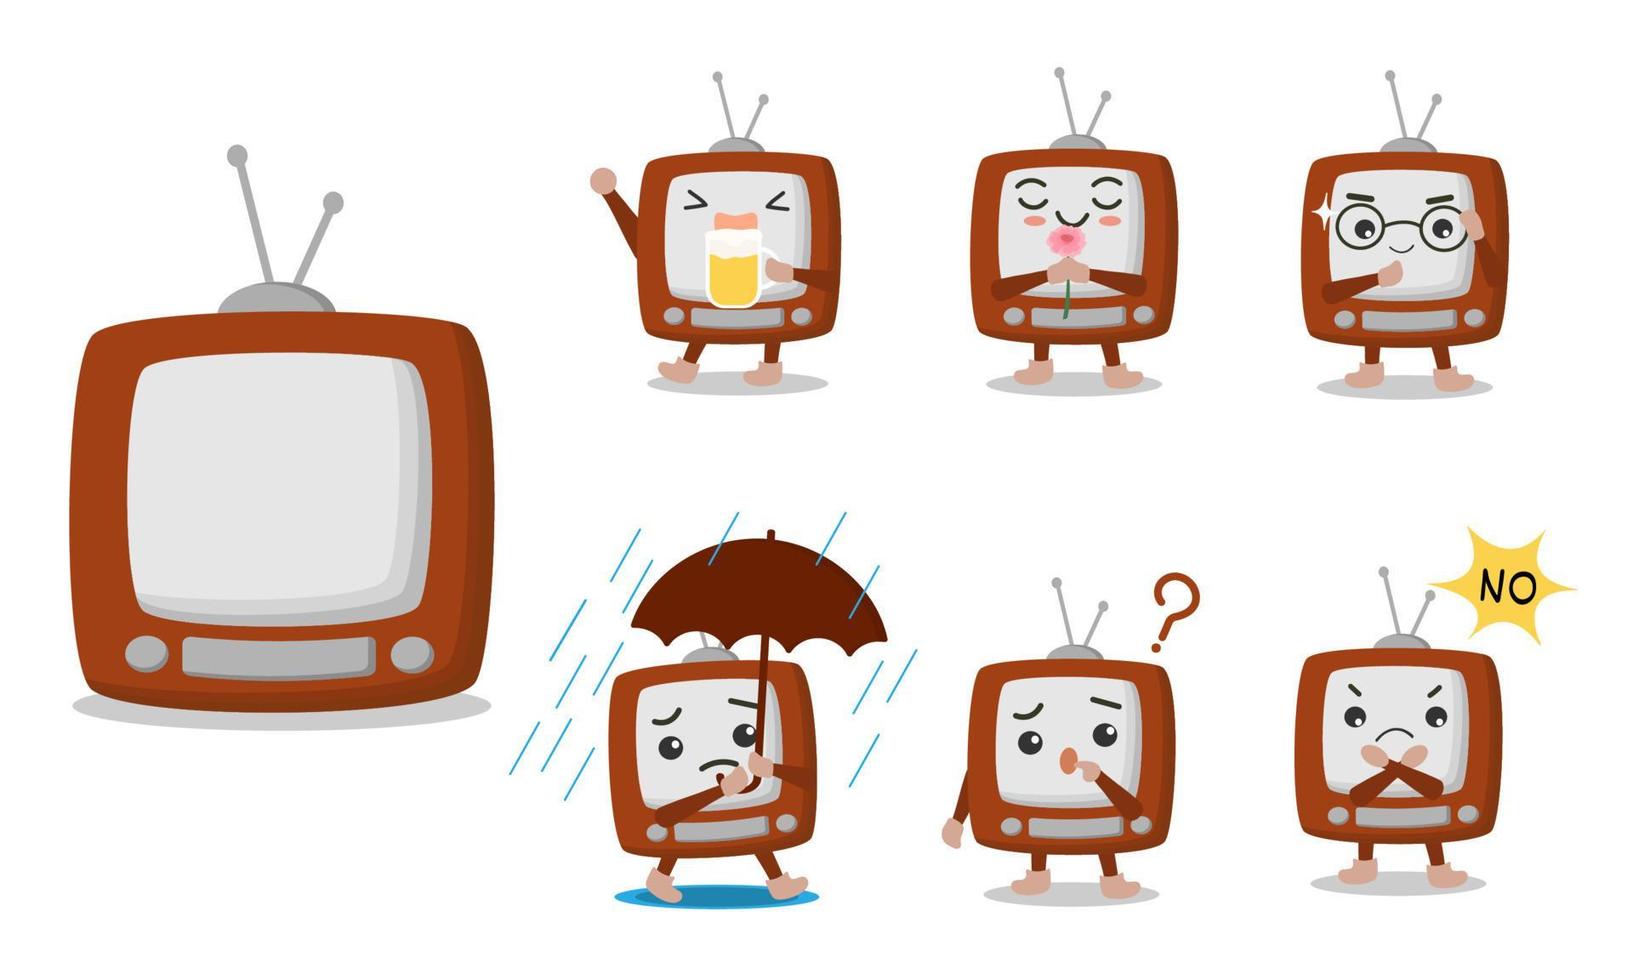 personaggi dei cartoni animati televisivi in varie pose ed emozioni come birra, annusare, indossare occhiali, piovere, meravigliarsi, rifiutarsi. vettore